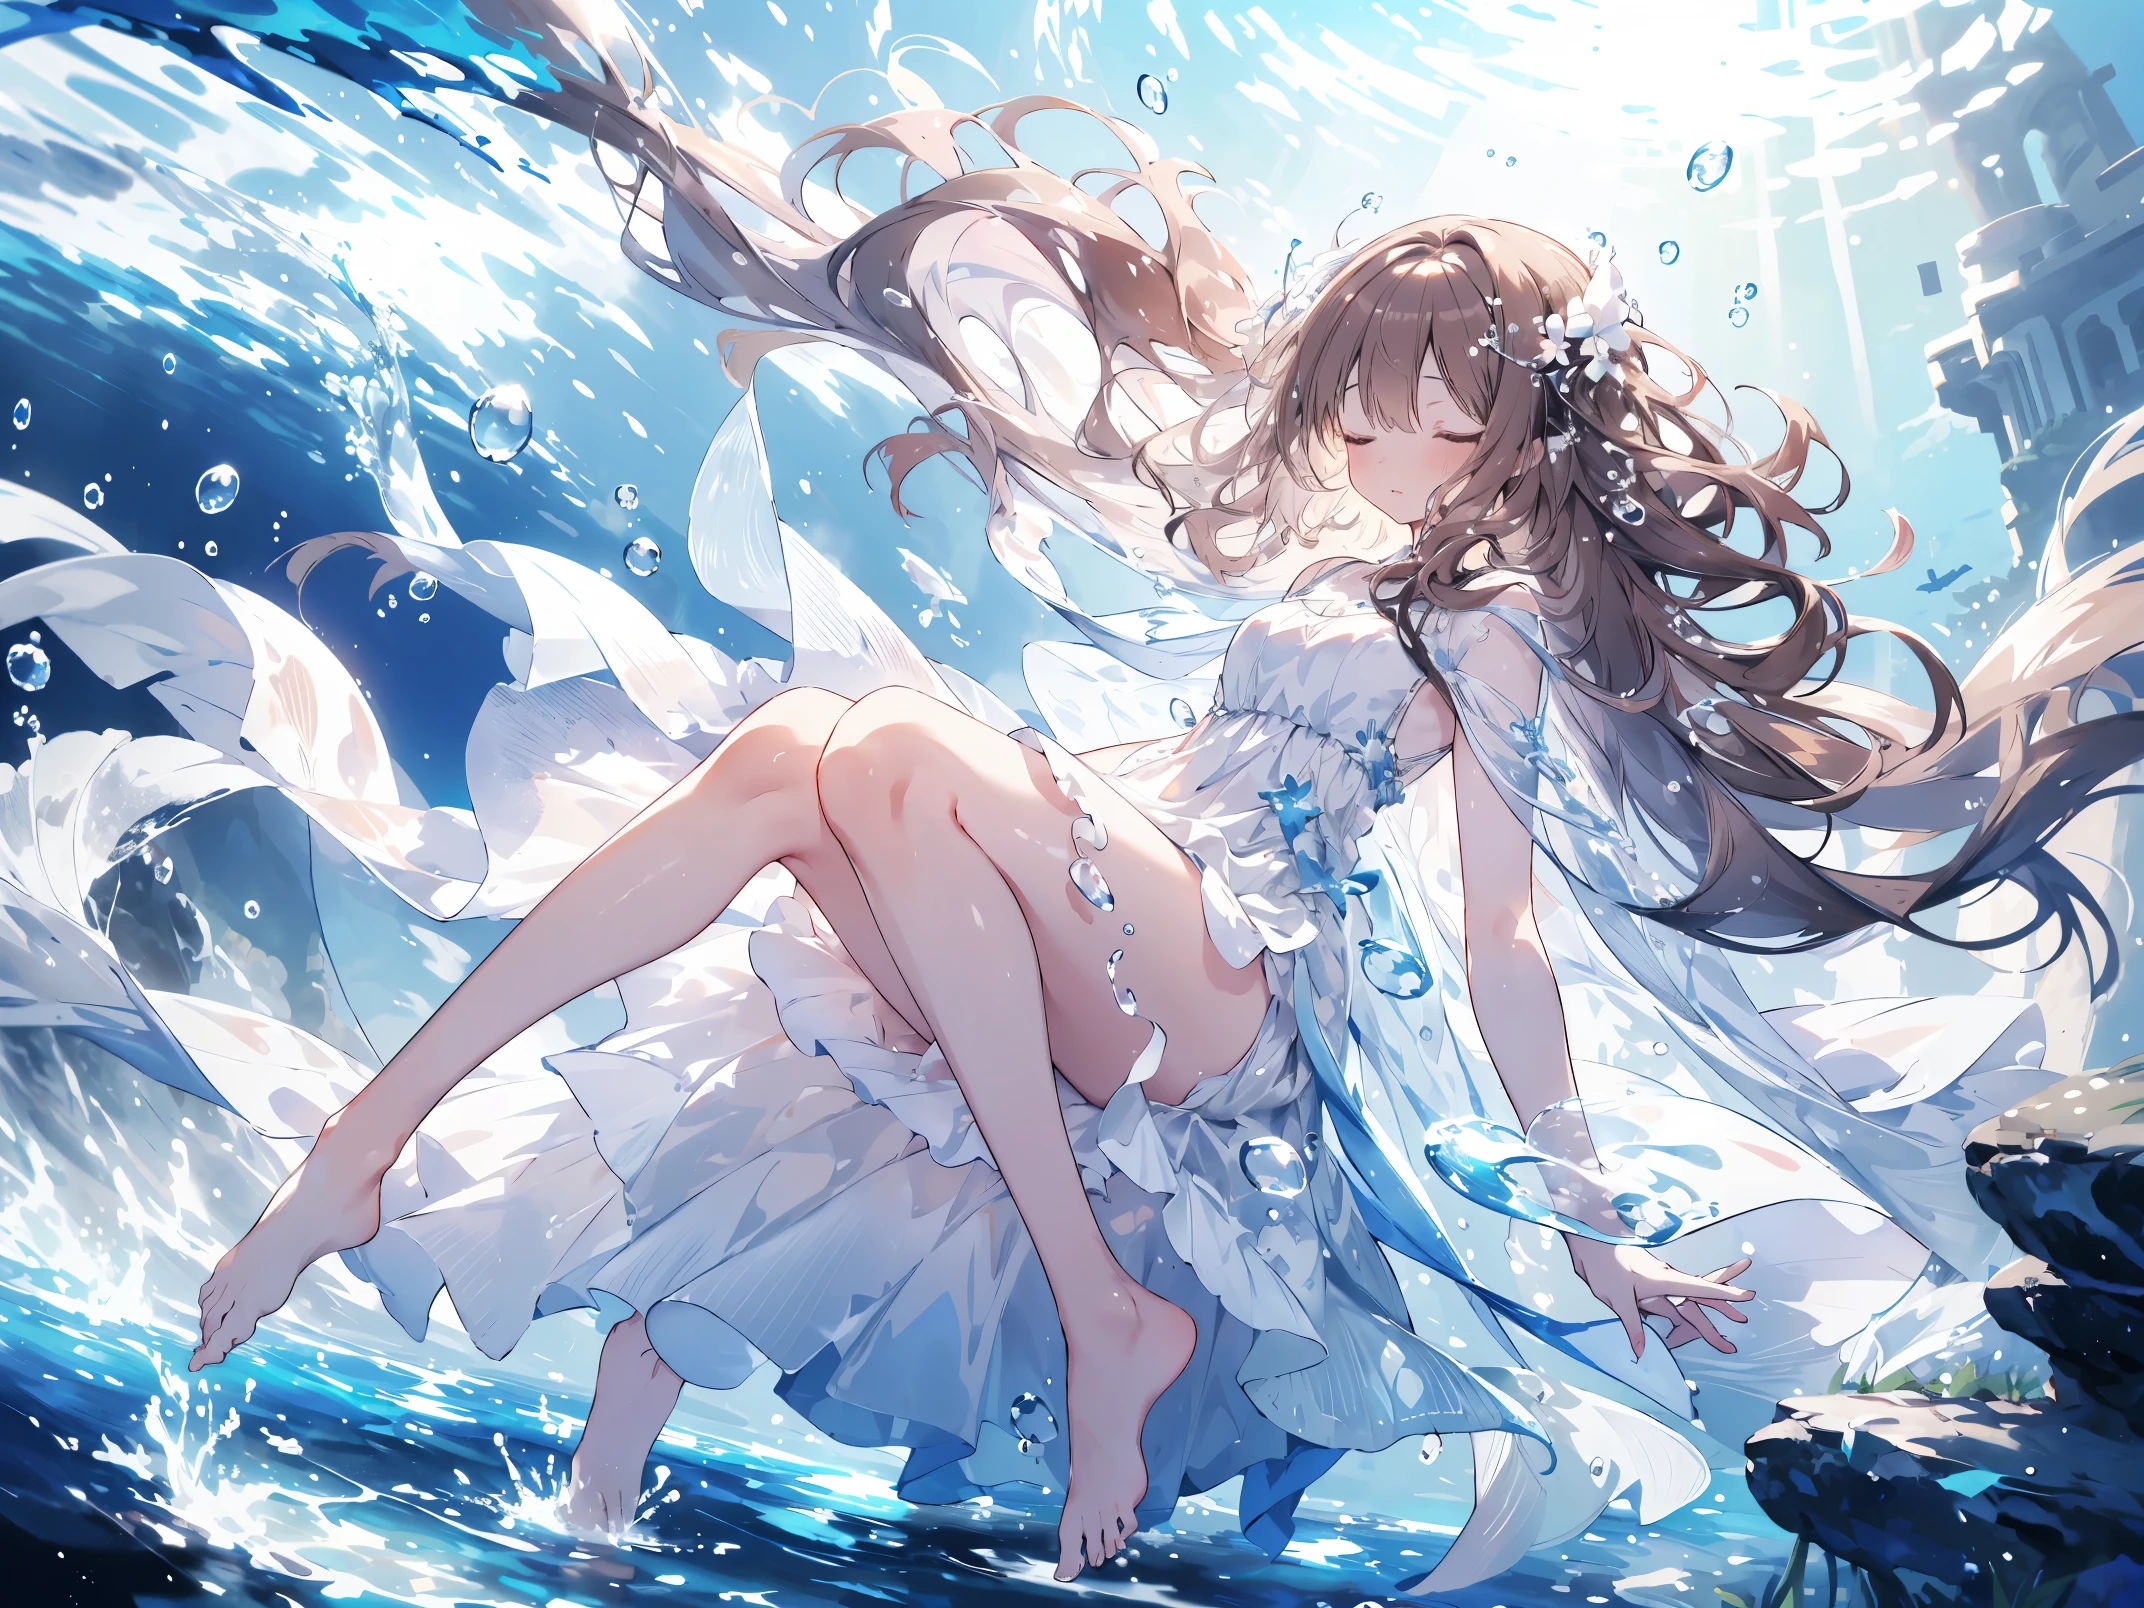 спать, an artwork of a woman in white одеваться and flowing white hair under water, 1 девочка, одеваться, в воде, один, длинные волосы, закрой глаза, коричневые волосы, air пузырь, босиком, пузырь